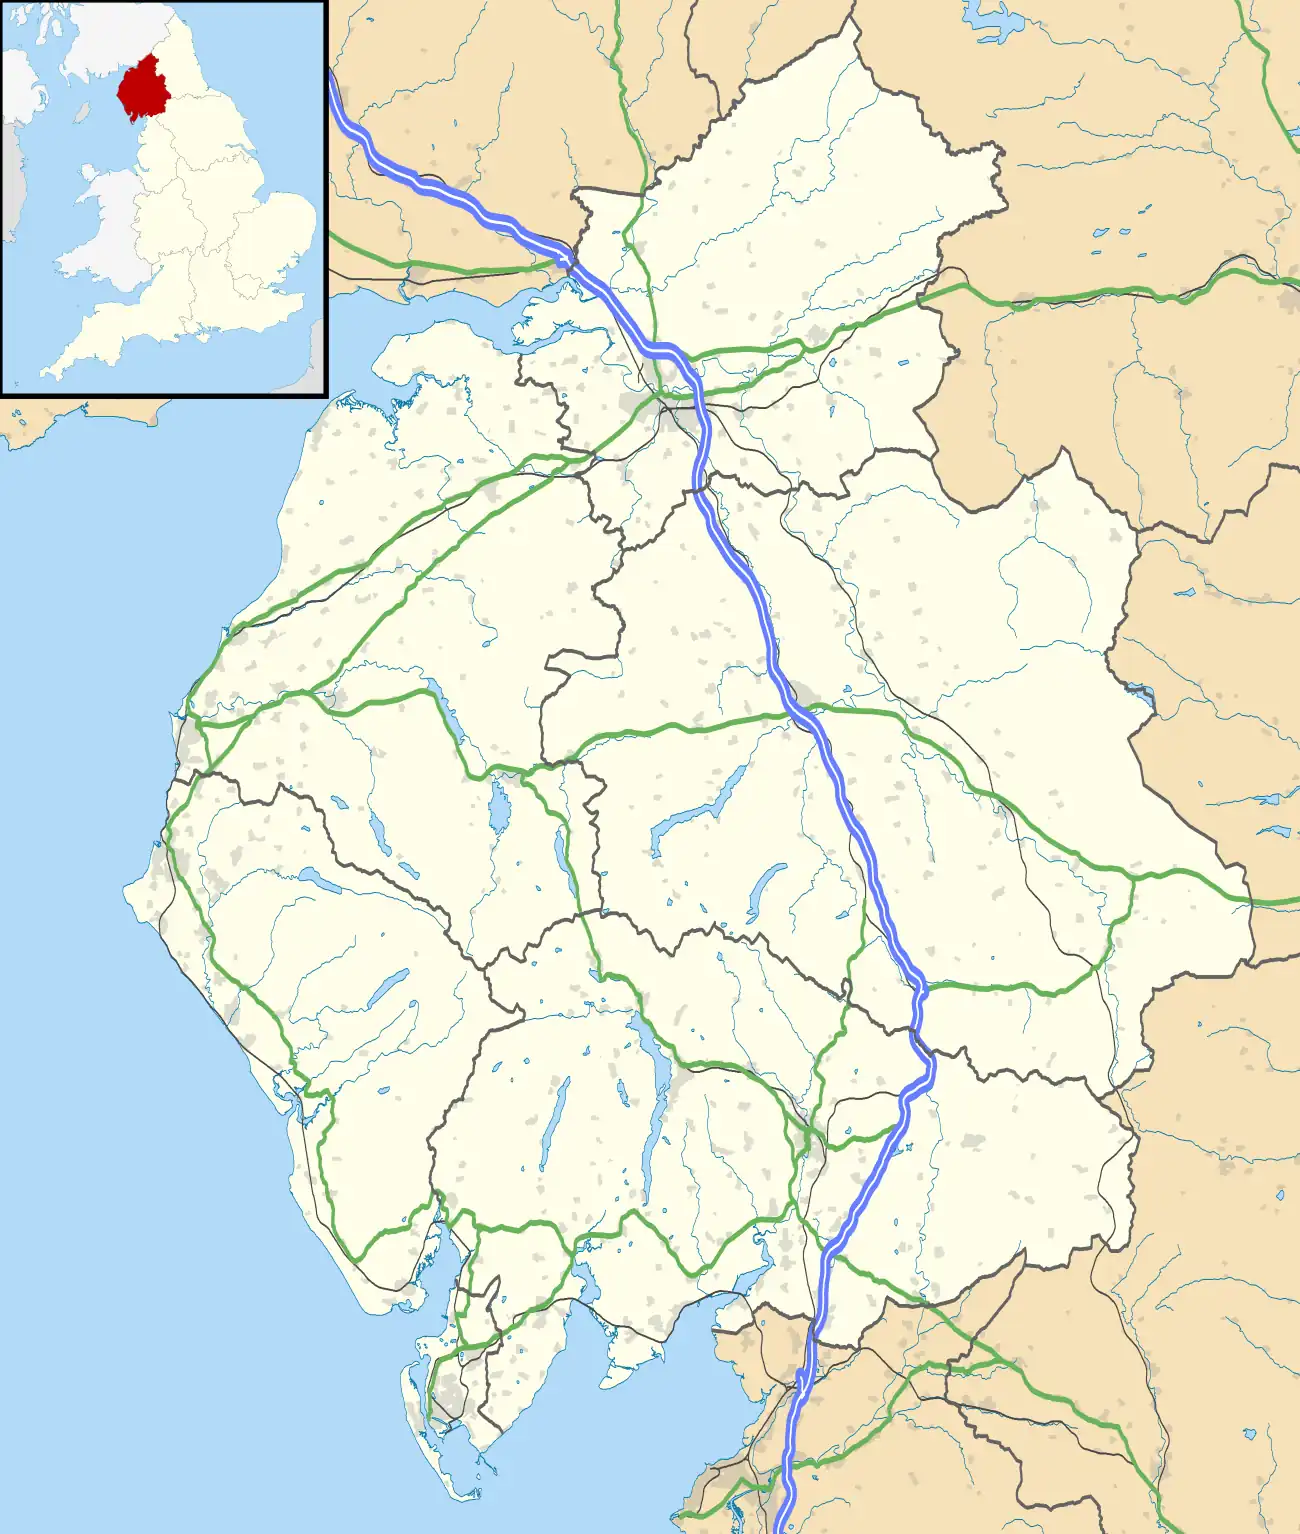 Coniston is located in Cumbria